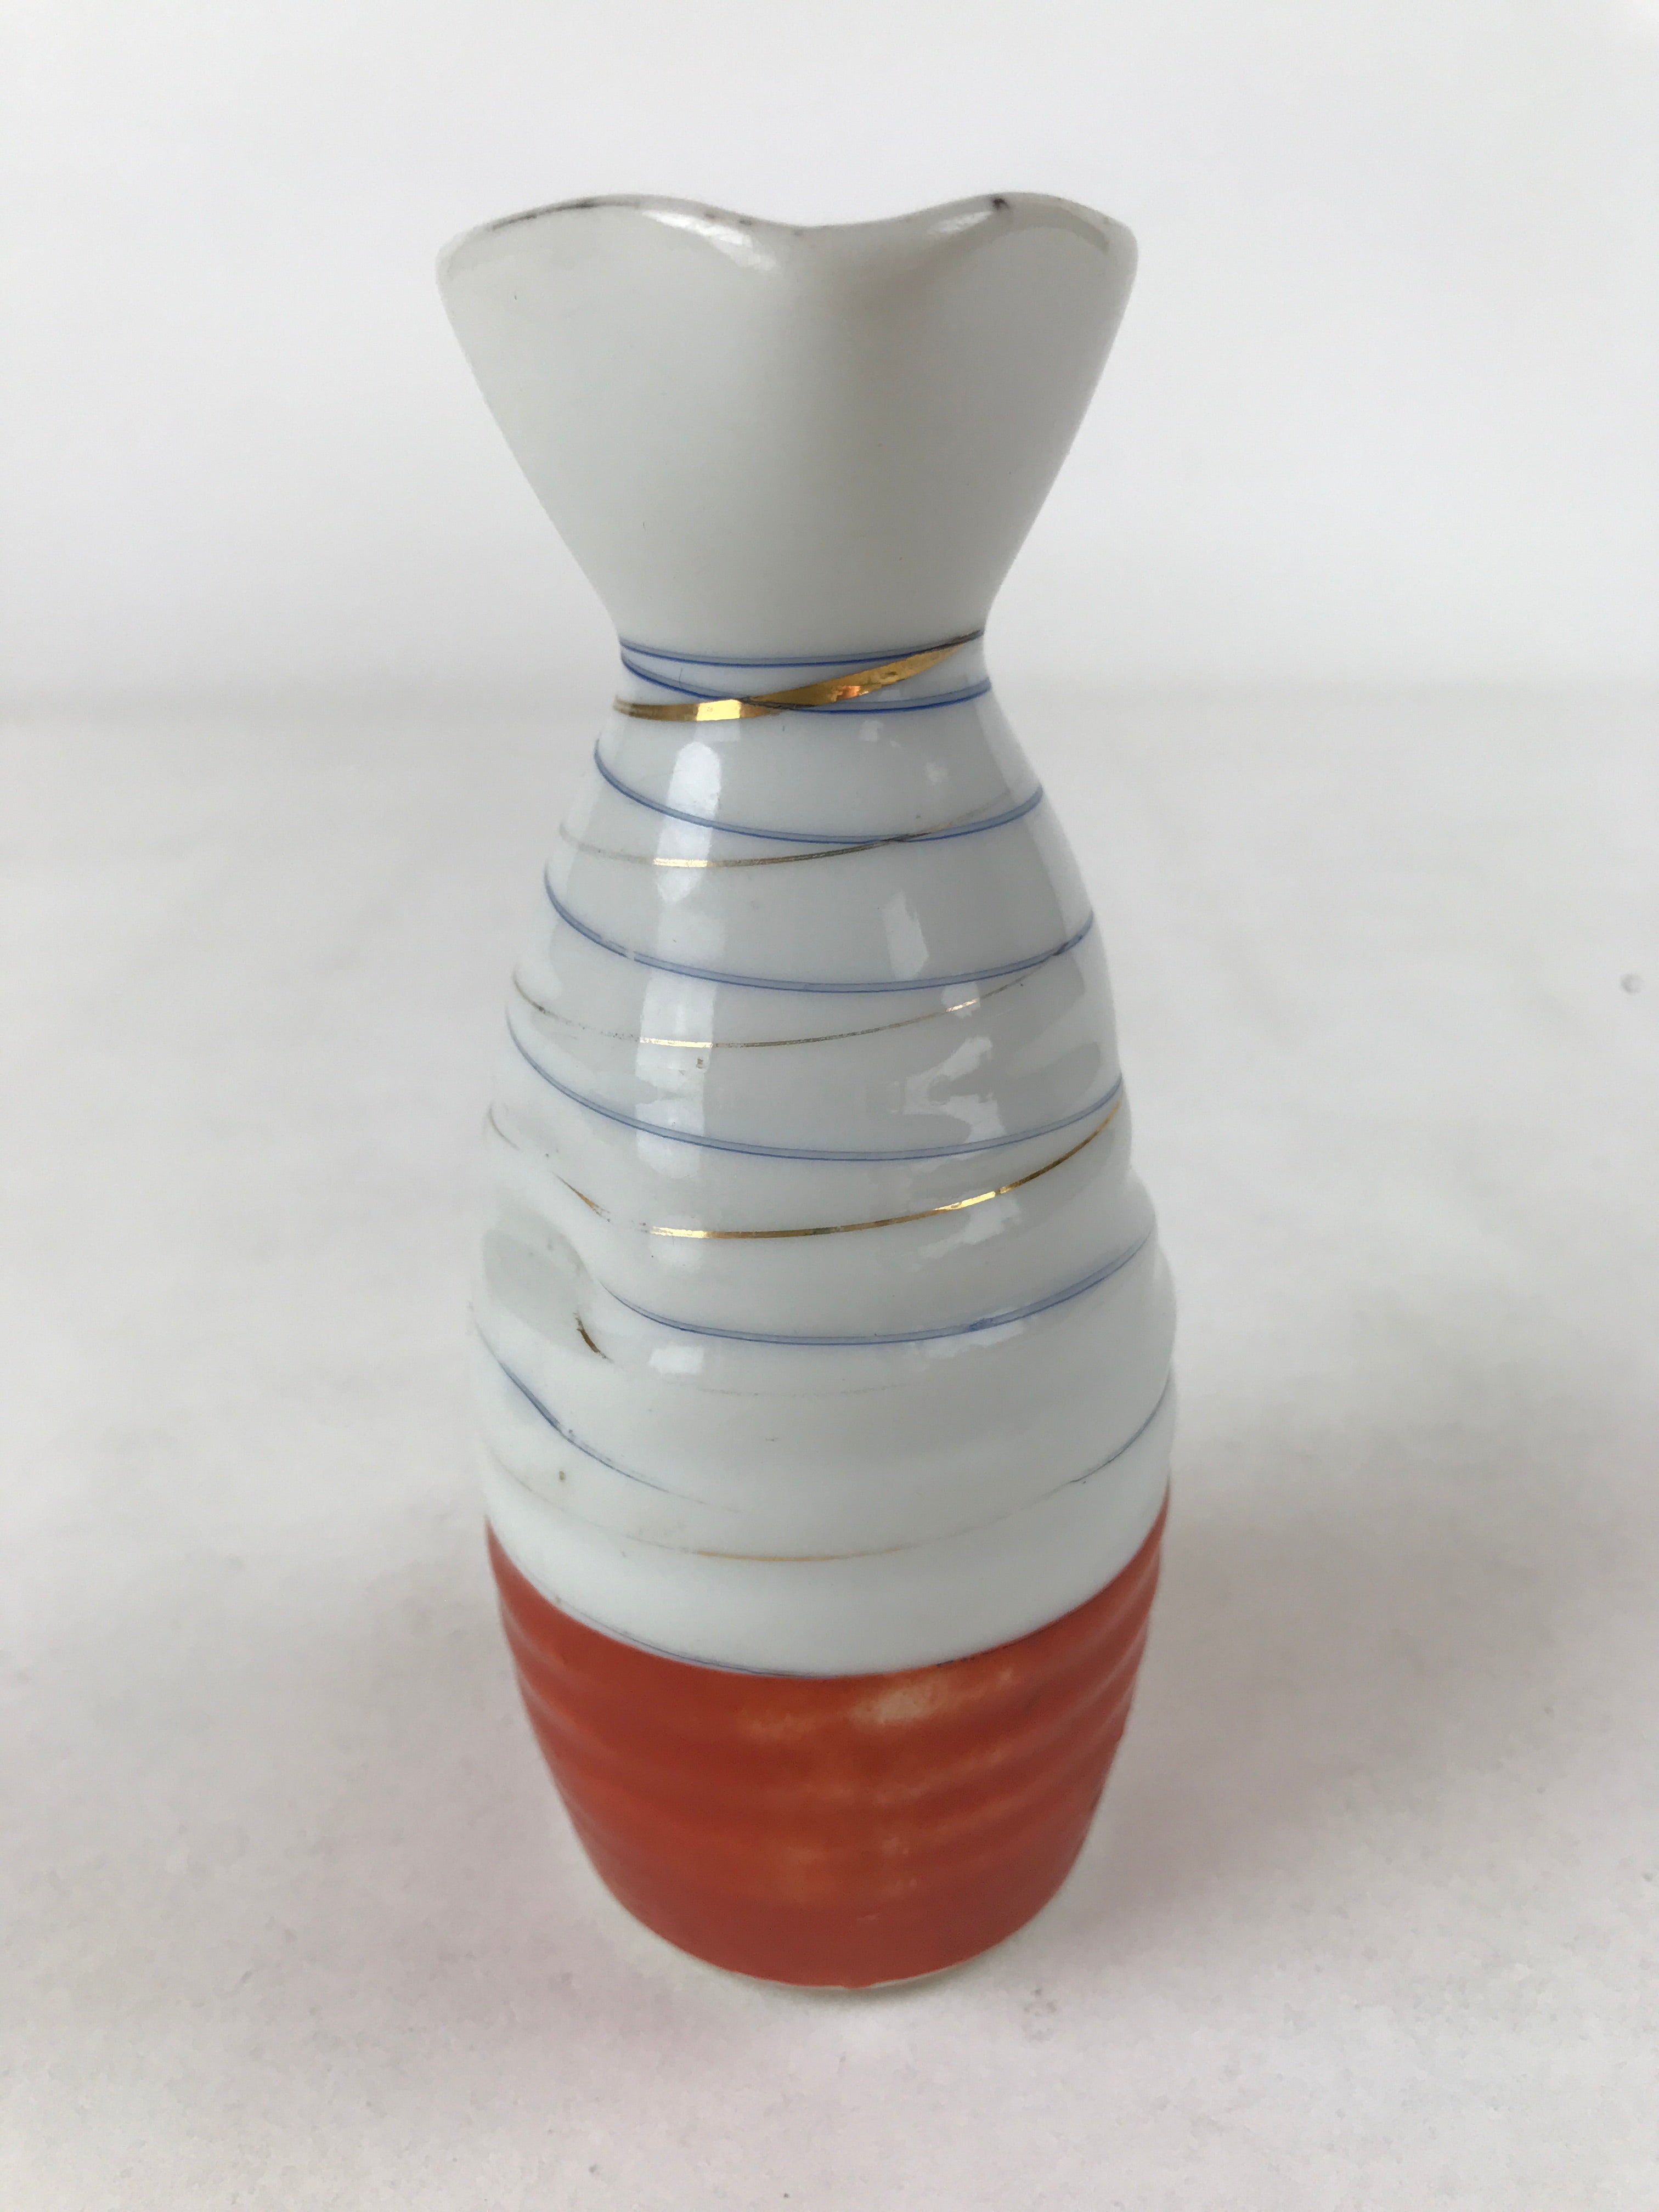 Japanese Sake Bottle Porcelain Tokkuri Vtg Ichi-Go Line Design White Red TS619